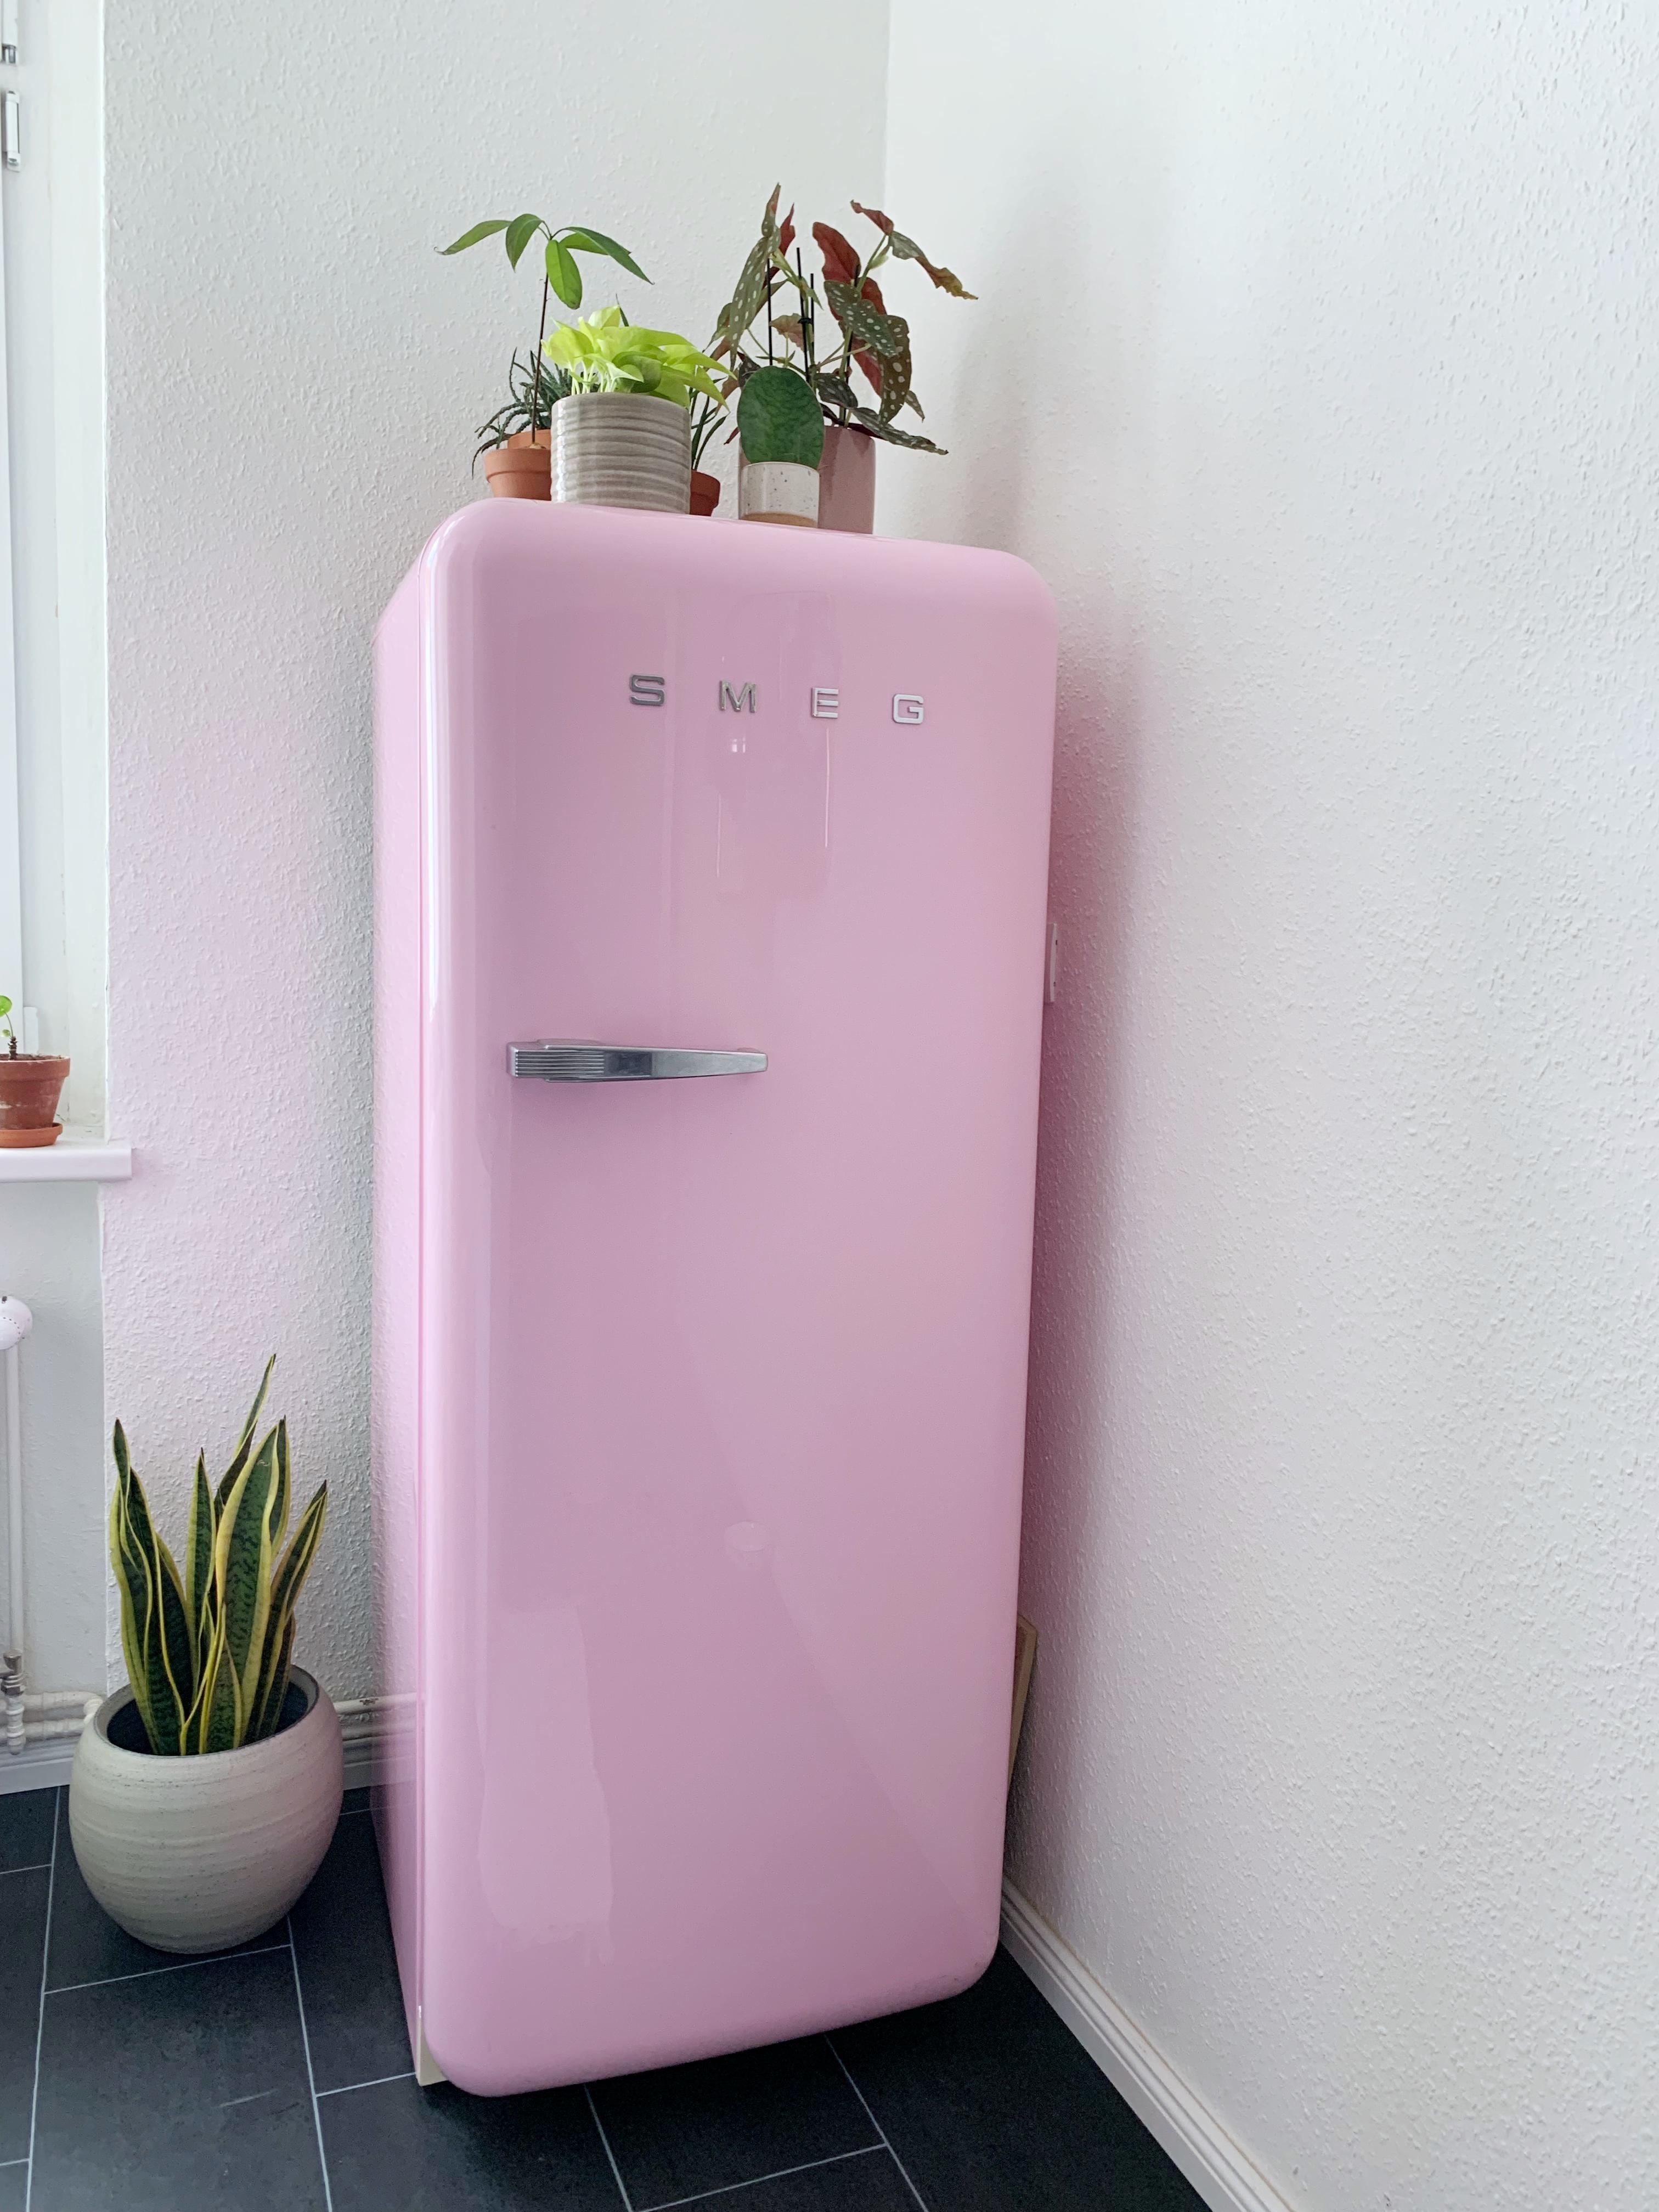 #küche #kühlschrank #rosa